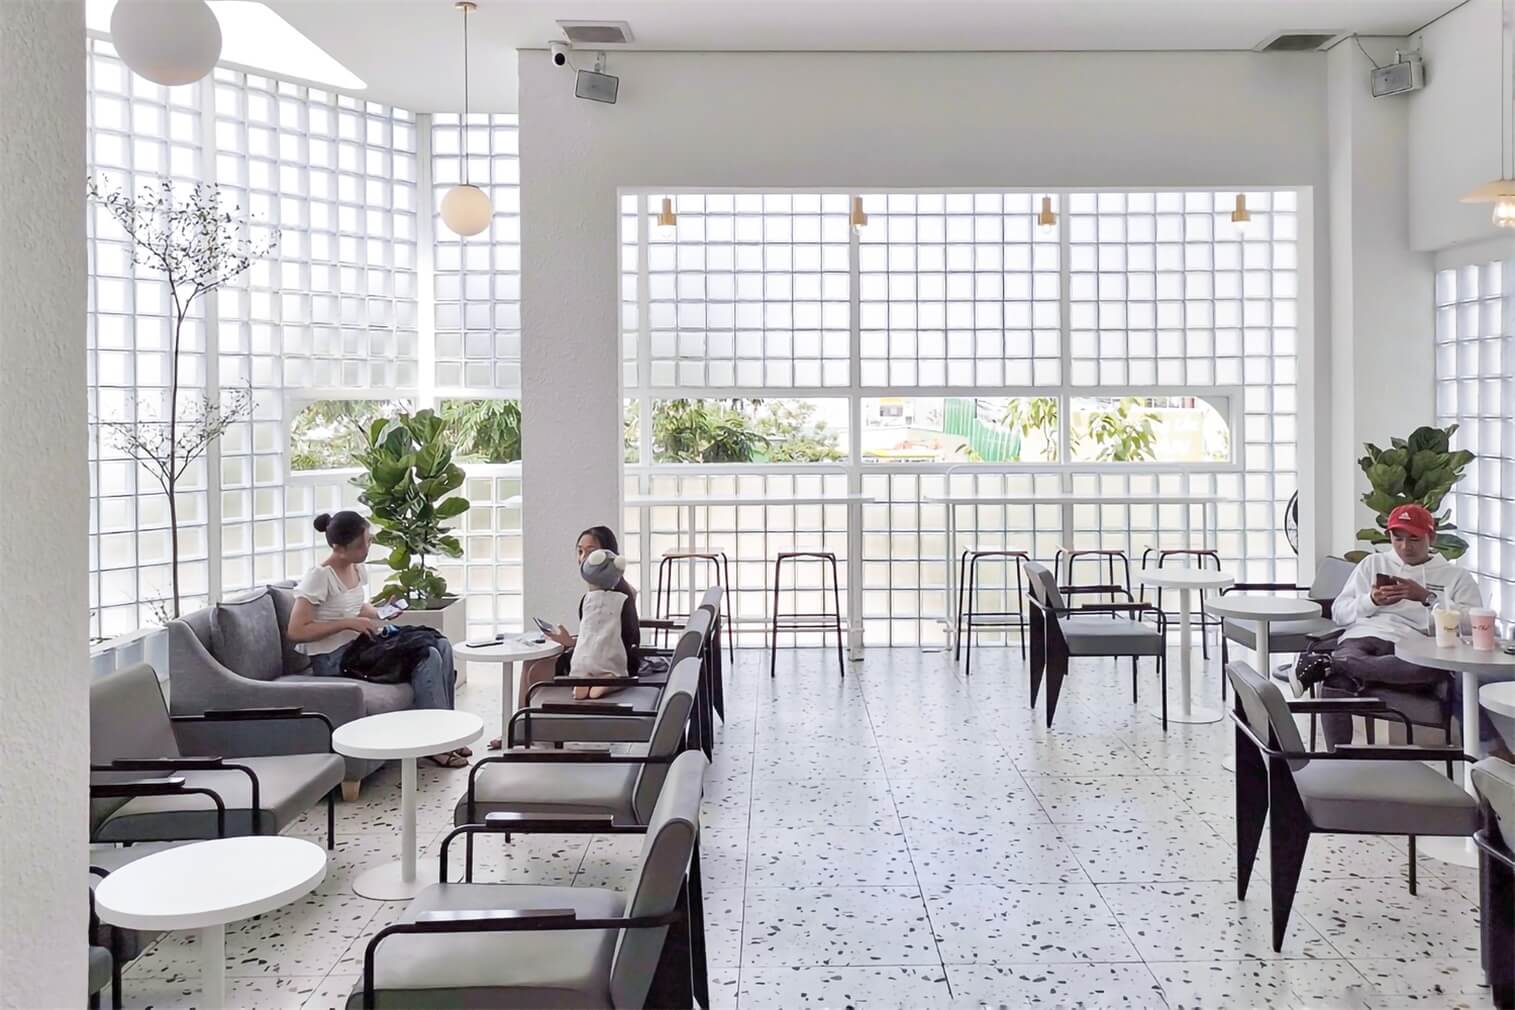 Quán cafe hiện đại tối giản với tone màu trắng - xám chủ đạo